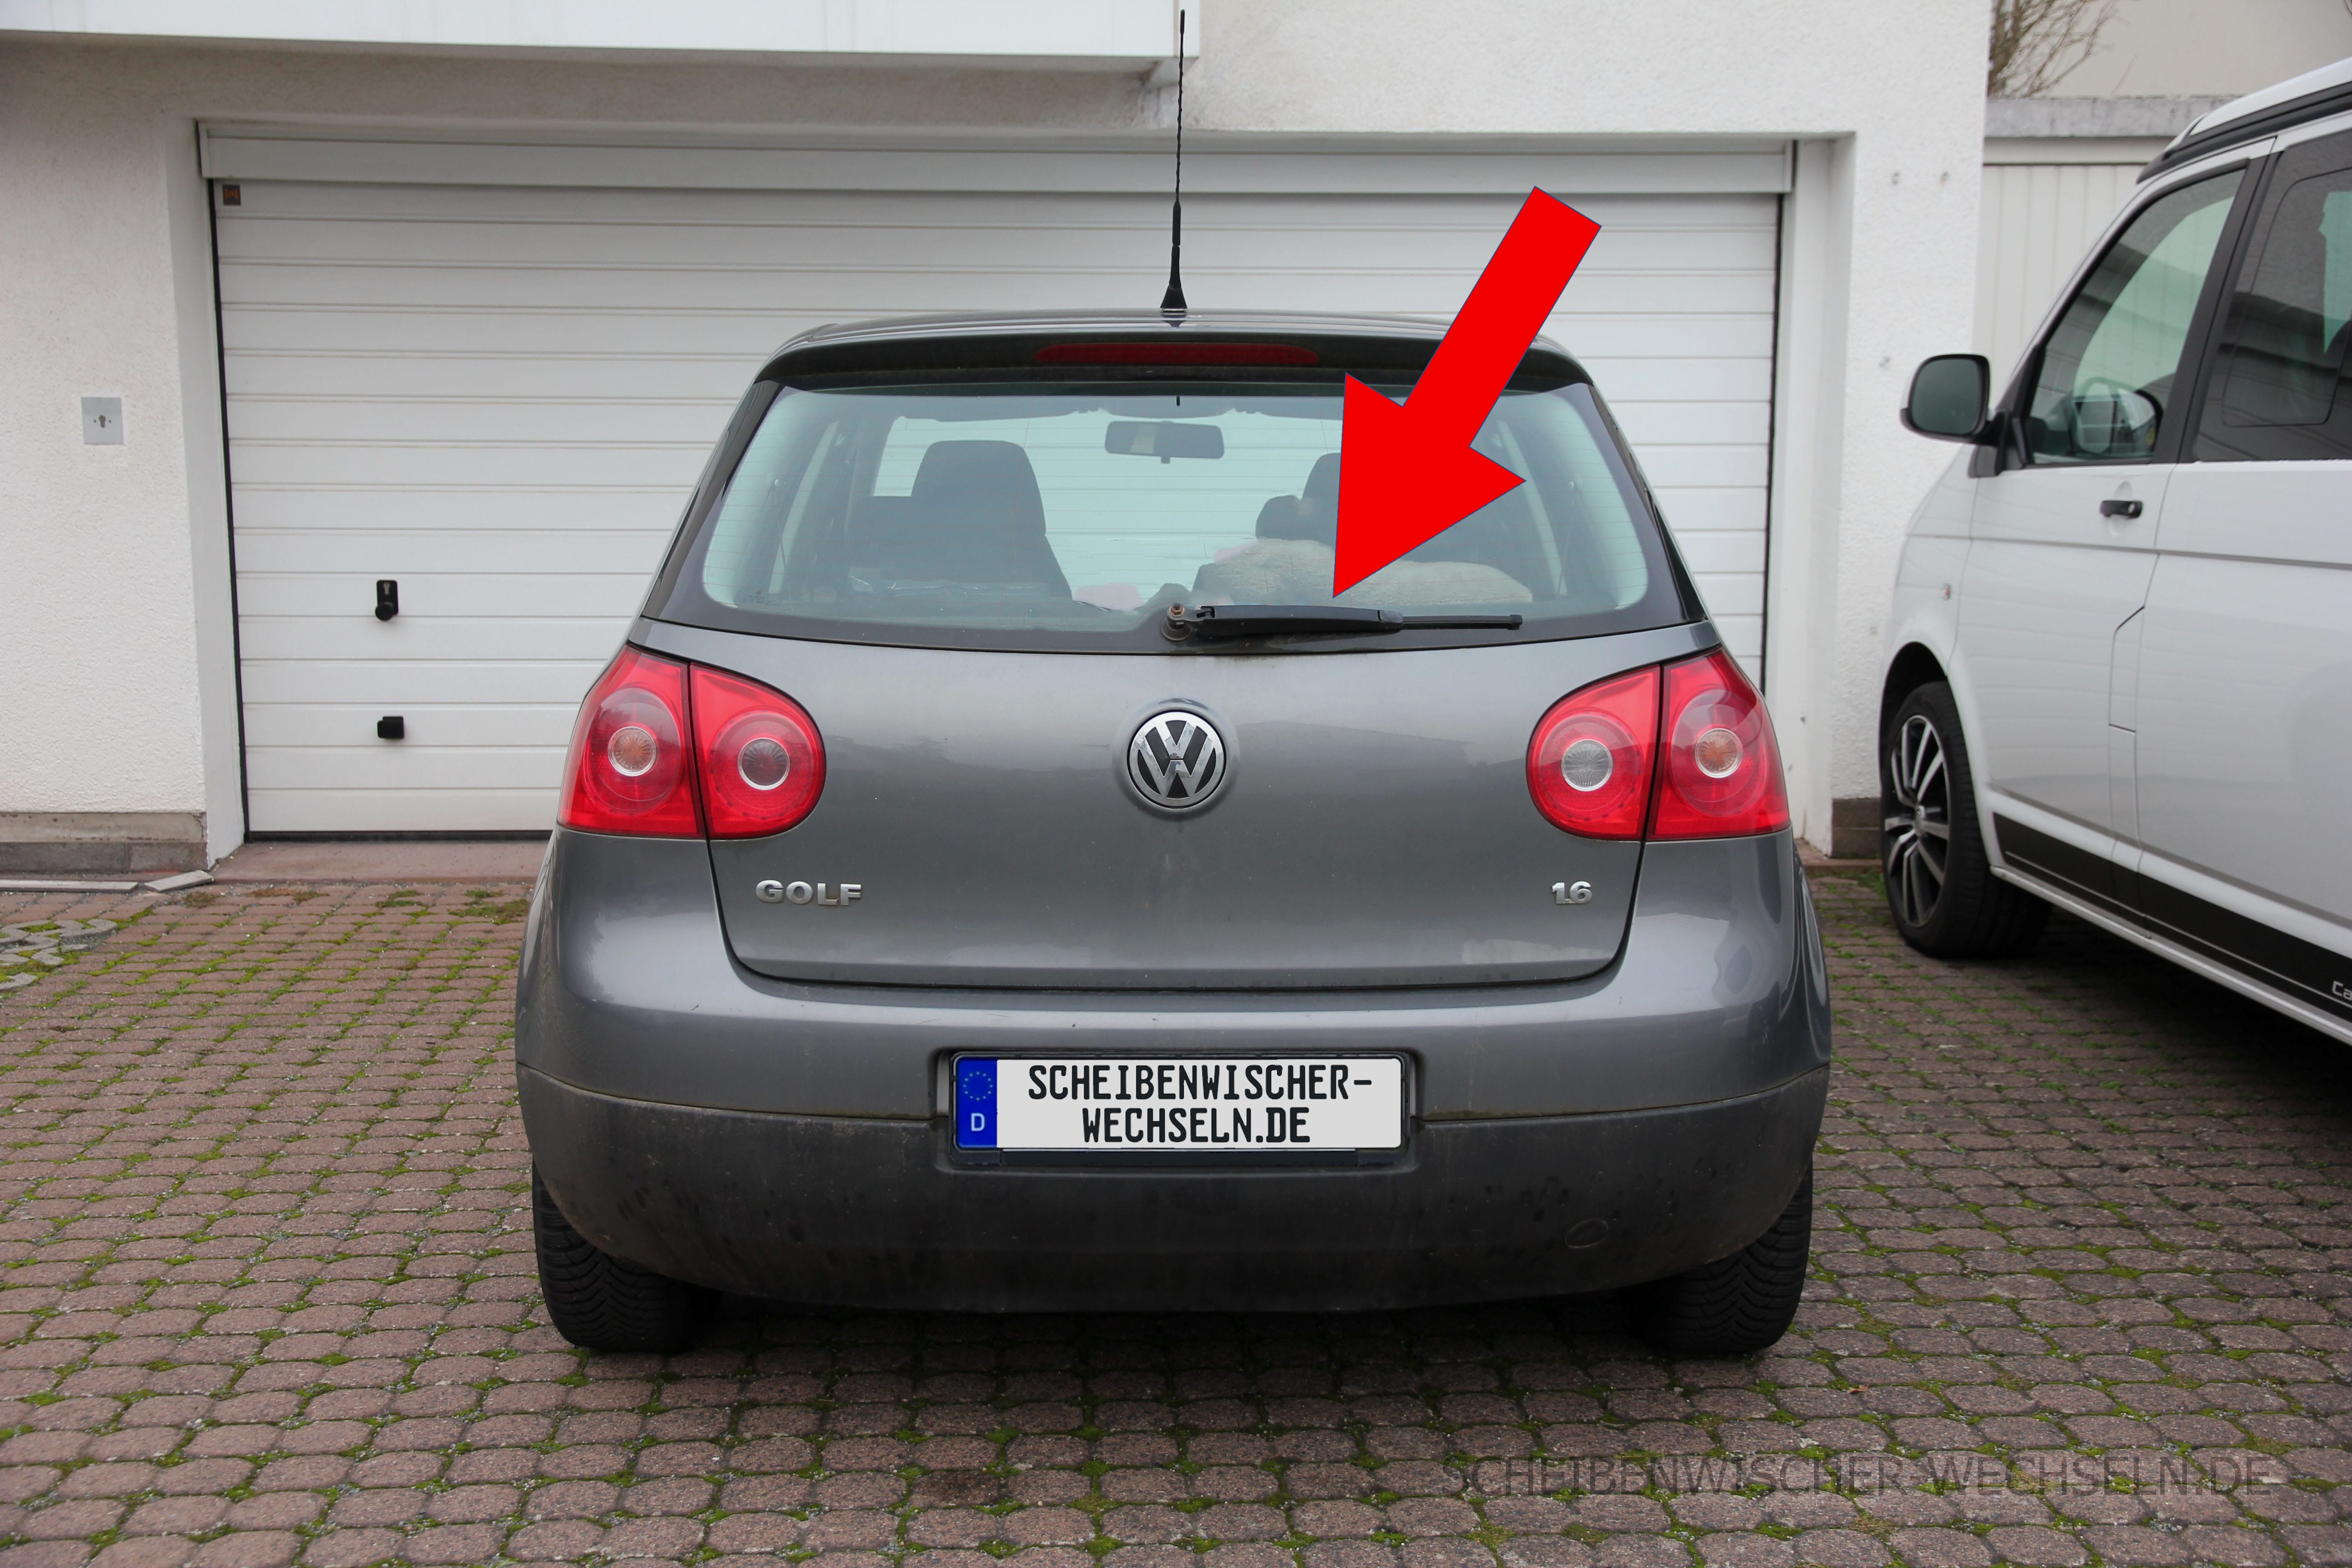 https://scheibenwischer-wechseln.de/wp-content/uploads/Heck-Ansicht-des-VW-Volkswagen-Golf-V-5.-Gen-Modell-1K-2003-2008-hinten.jpg